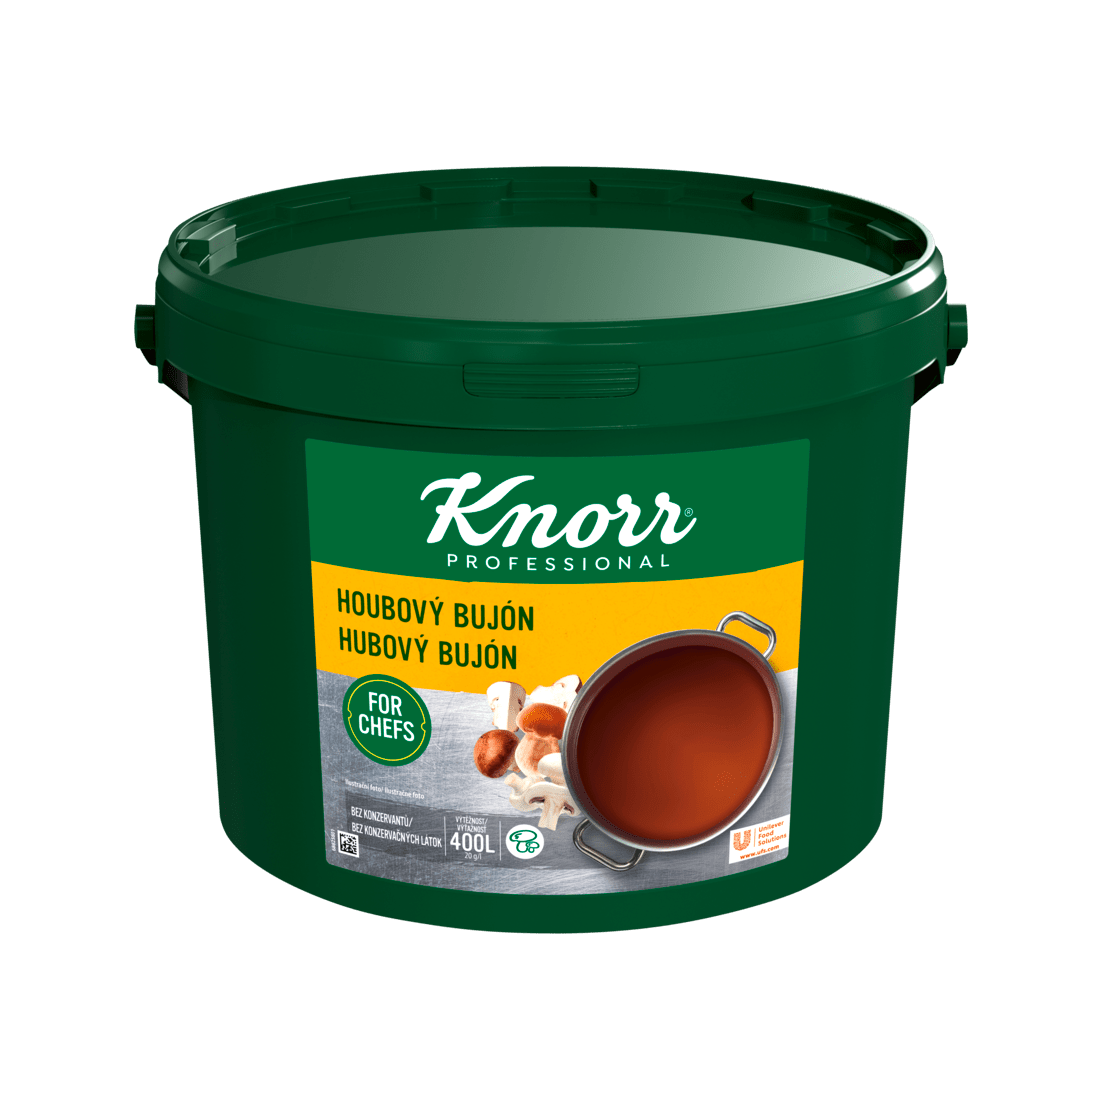 KNORR Professional Hubový bujón 8 kg